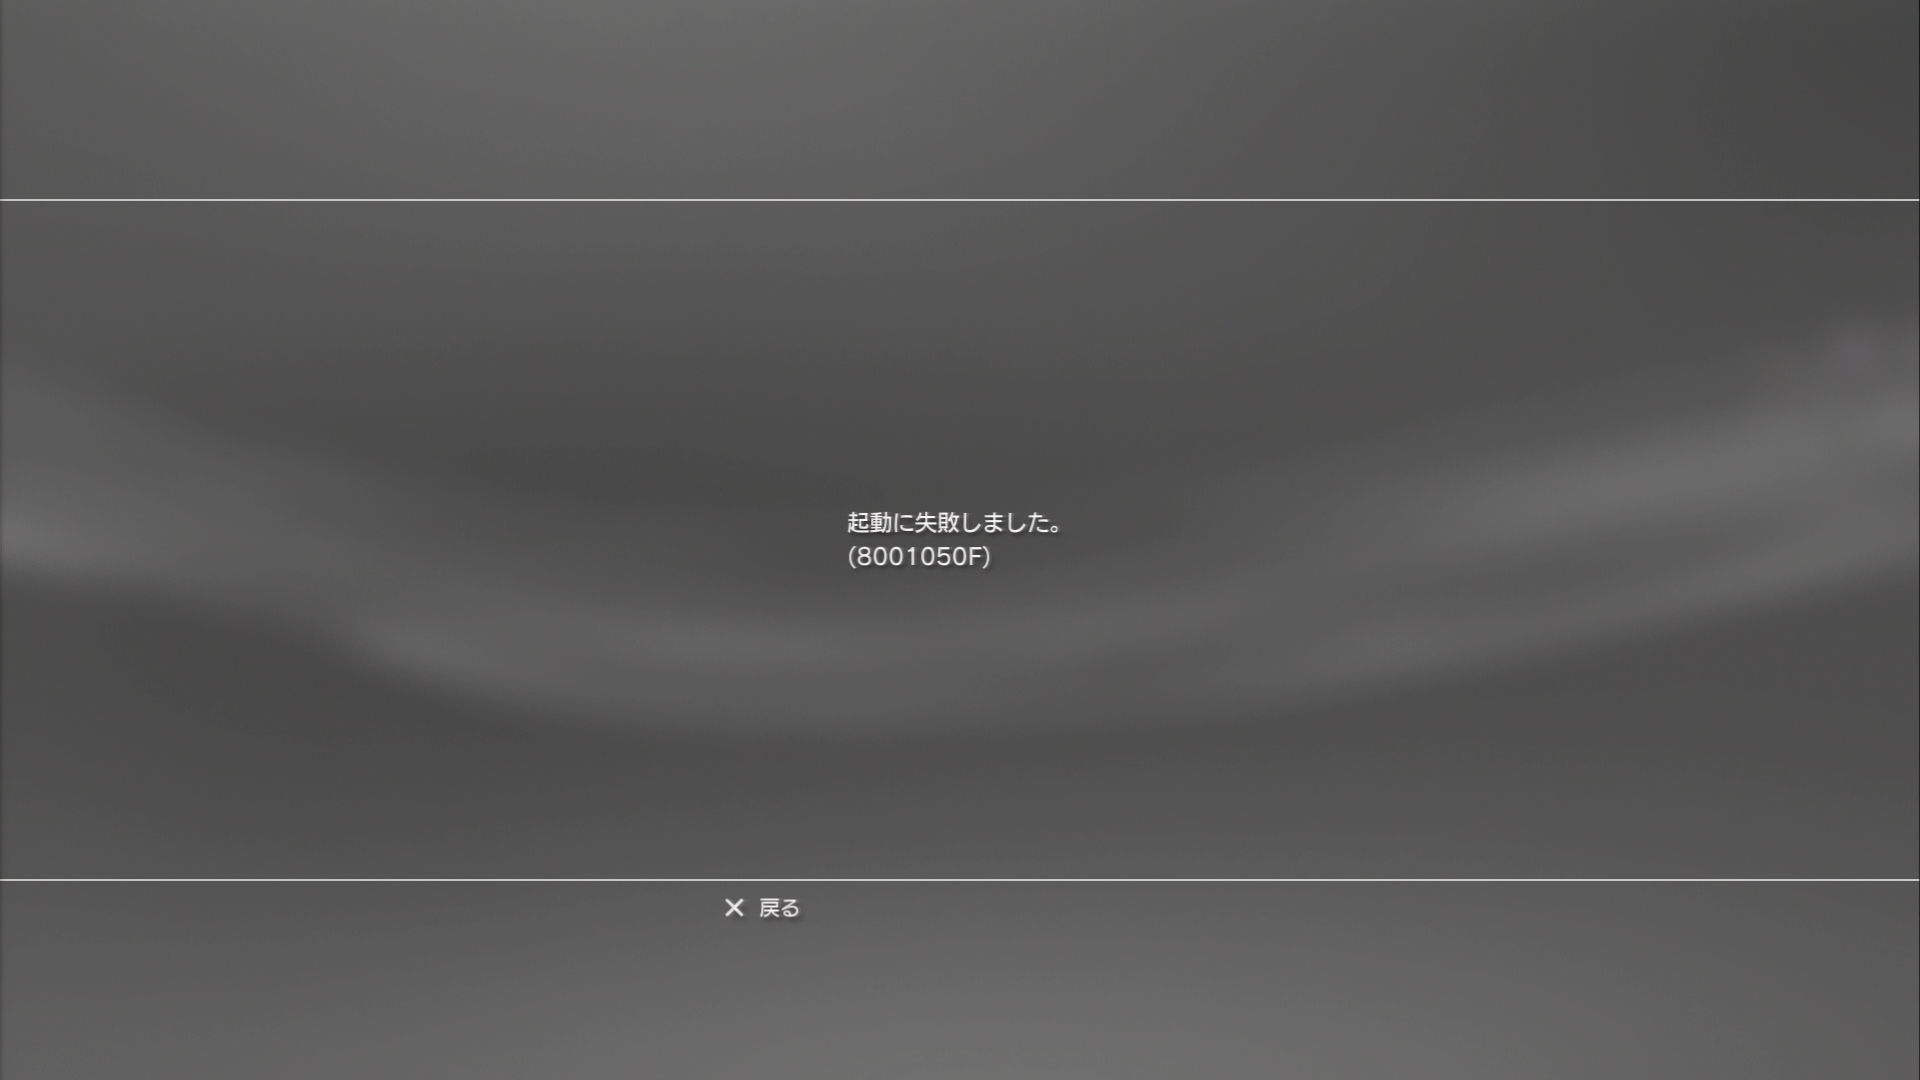 Sony的ライフスタイル Ssブログ